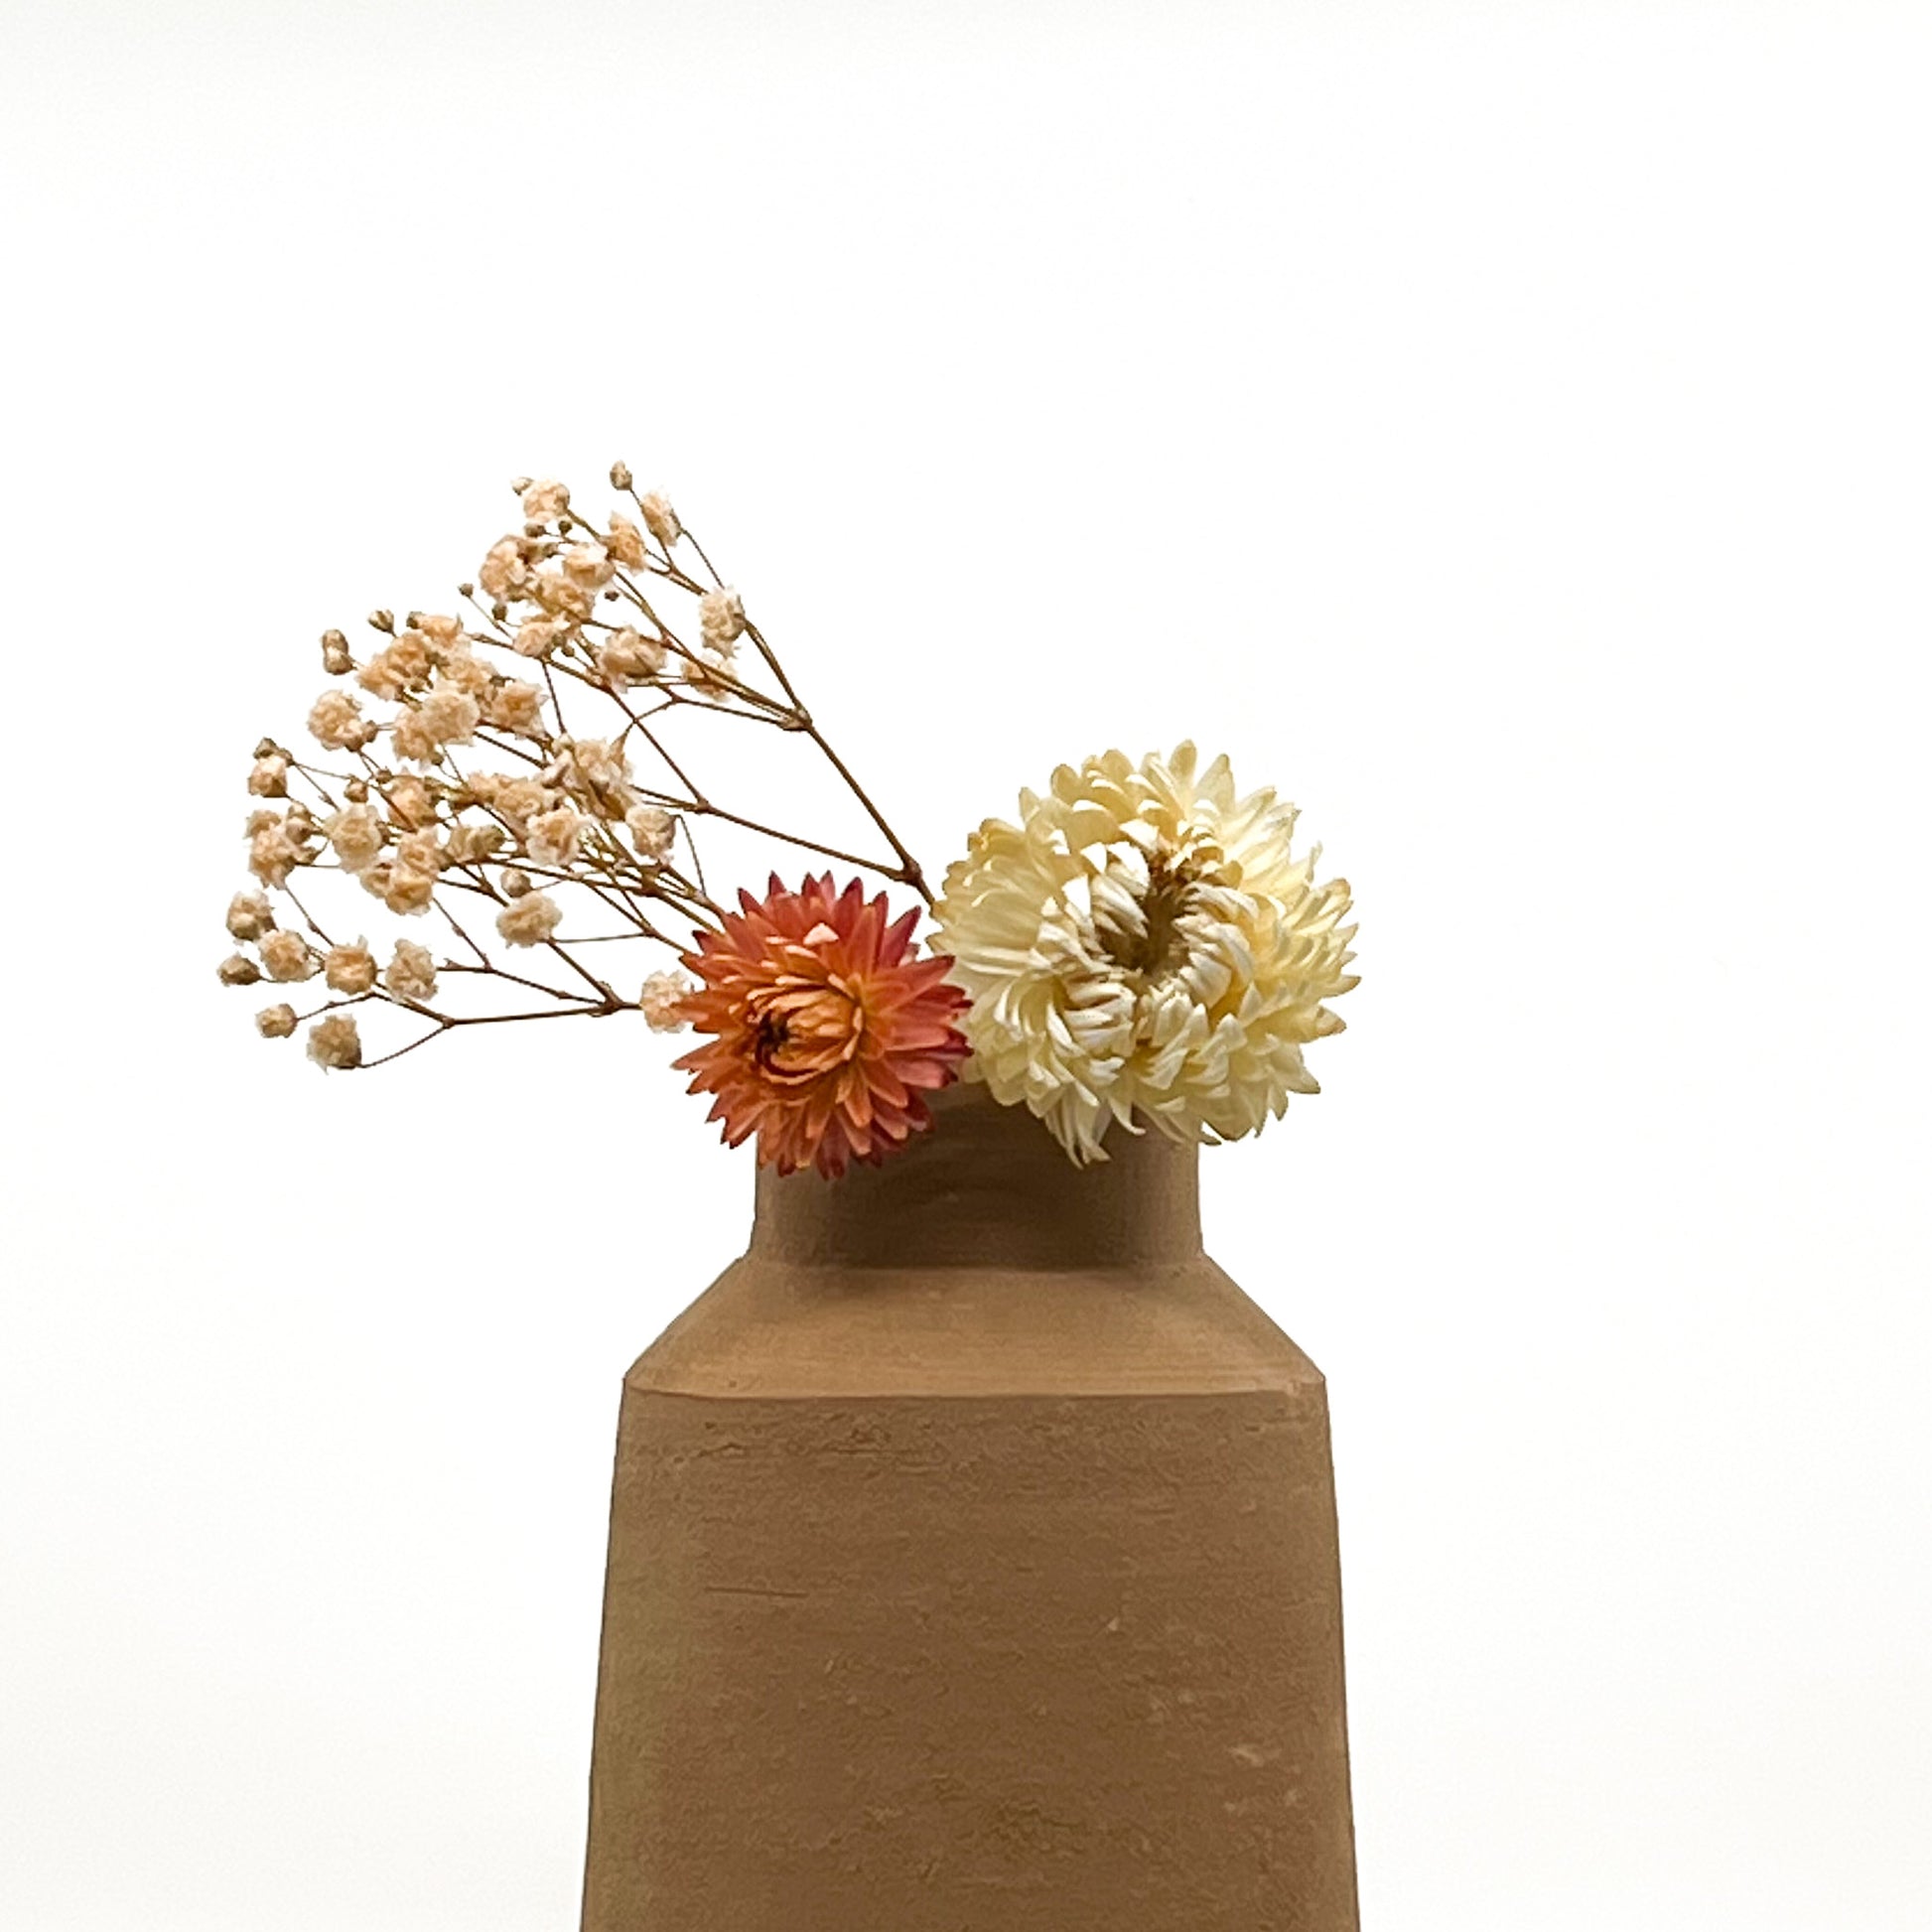 Vase au design épuré en terre cuite fait main. Hauteur 17 cm, largeur de la base 10 cm. Livré avec fleurs séchées offertes.